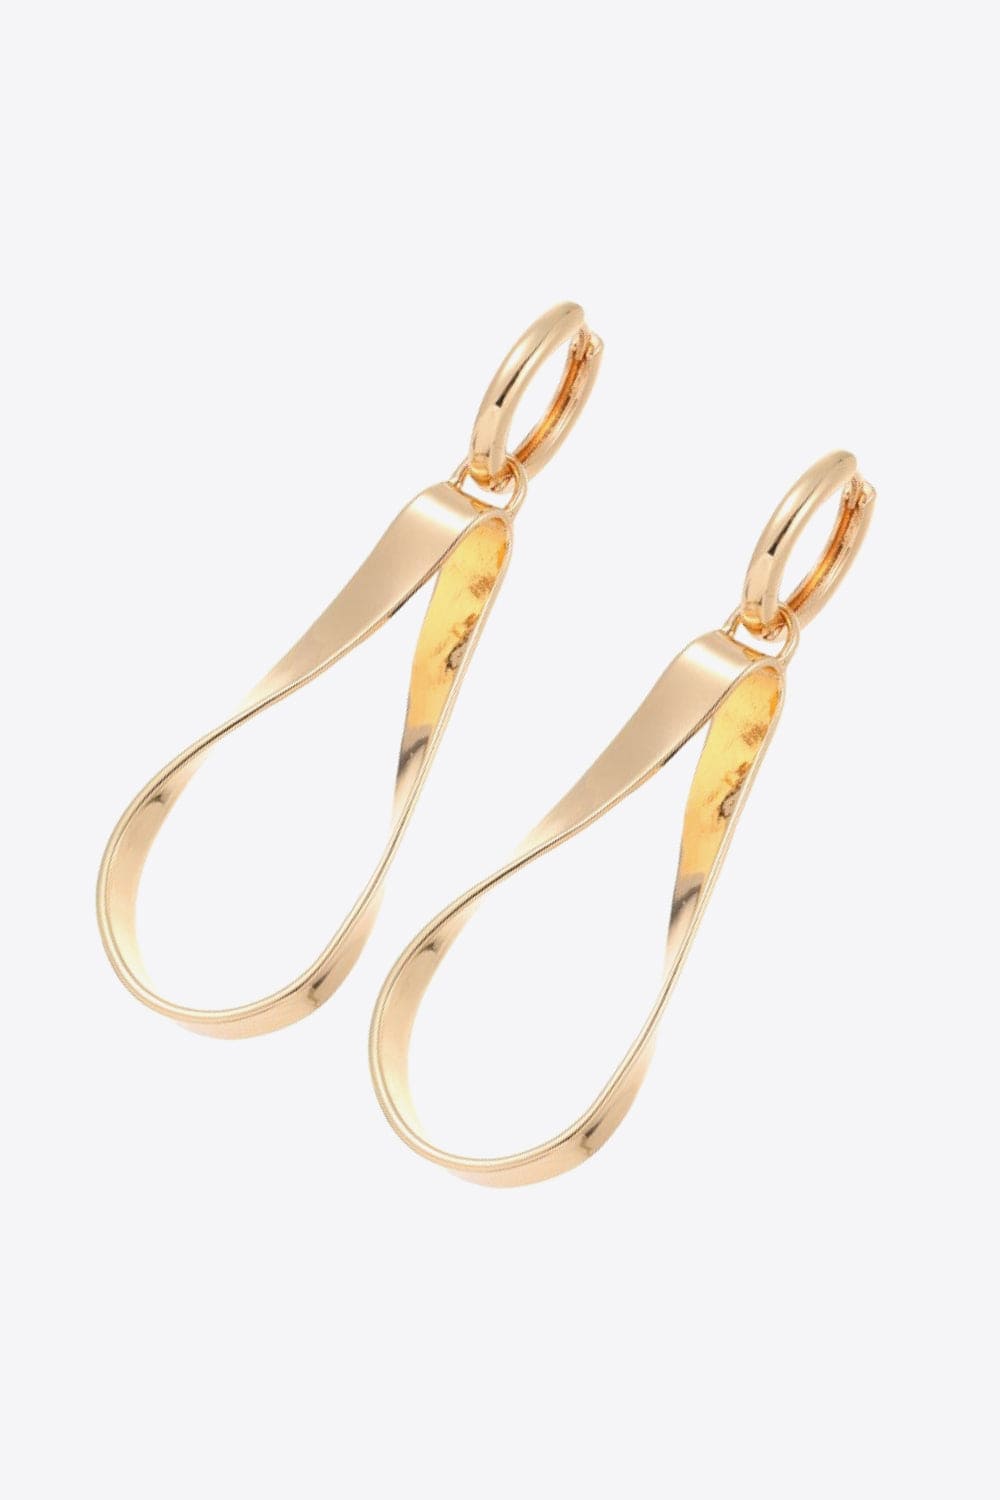 Alloy 18K Gold-Plated Earrings - Body By J'ne